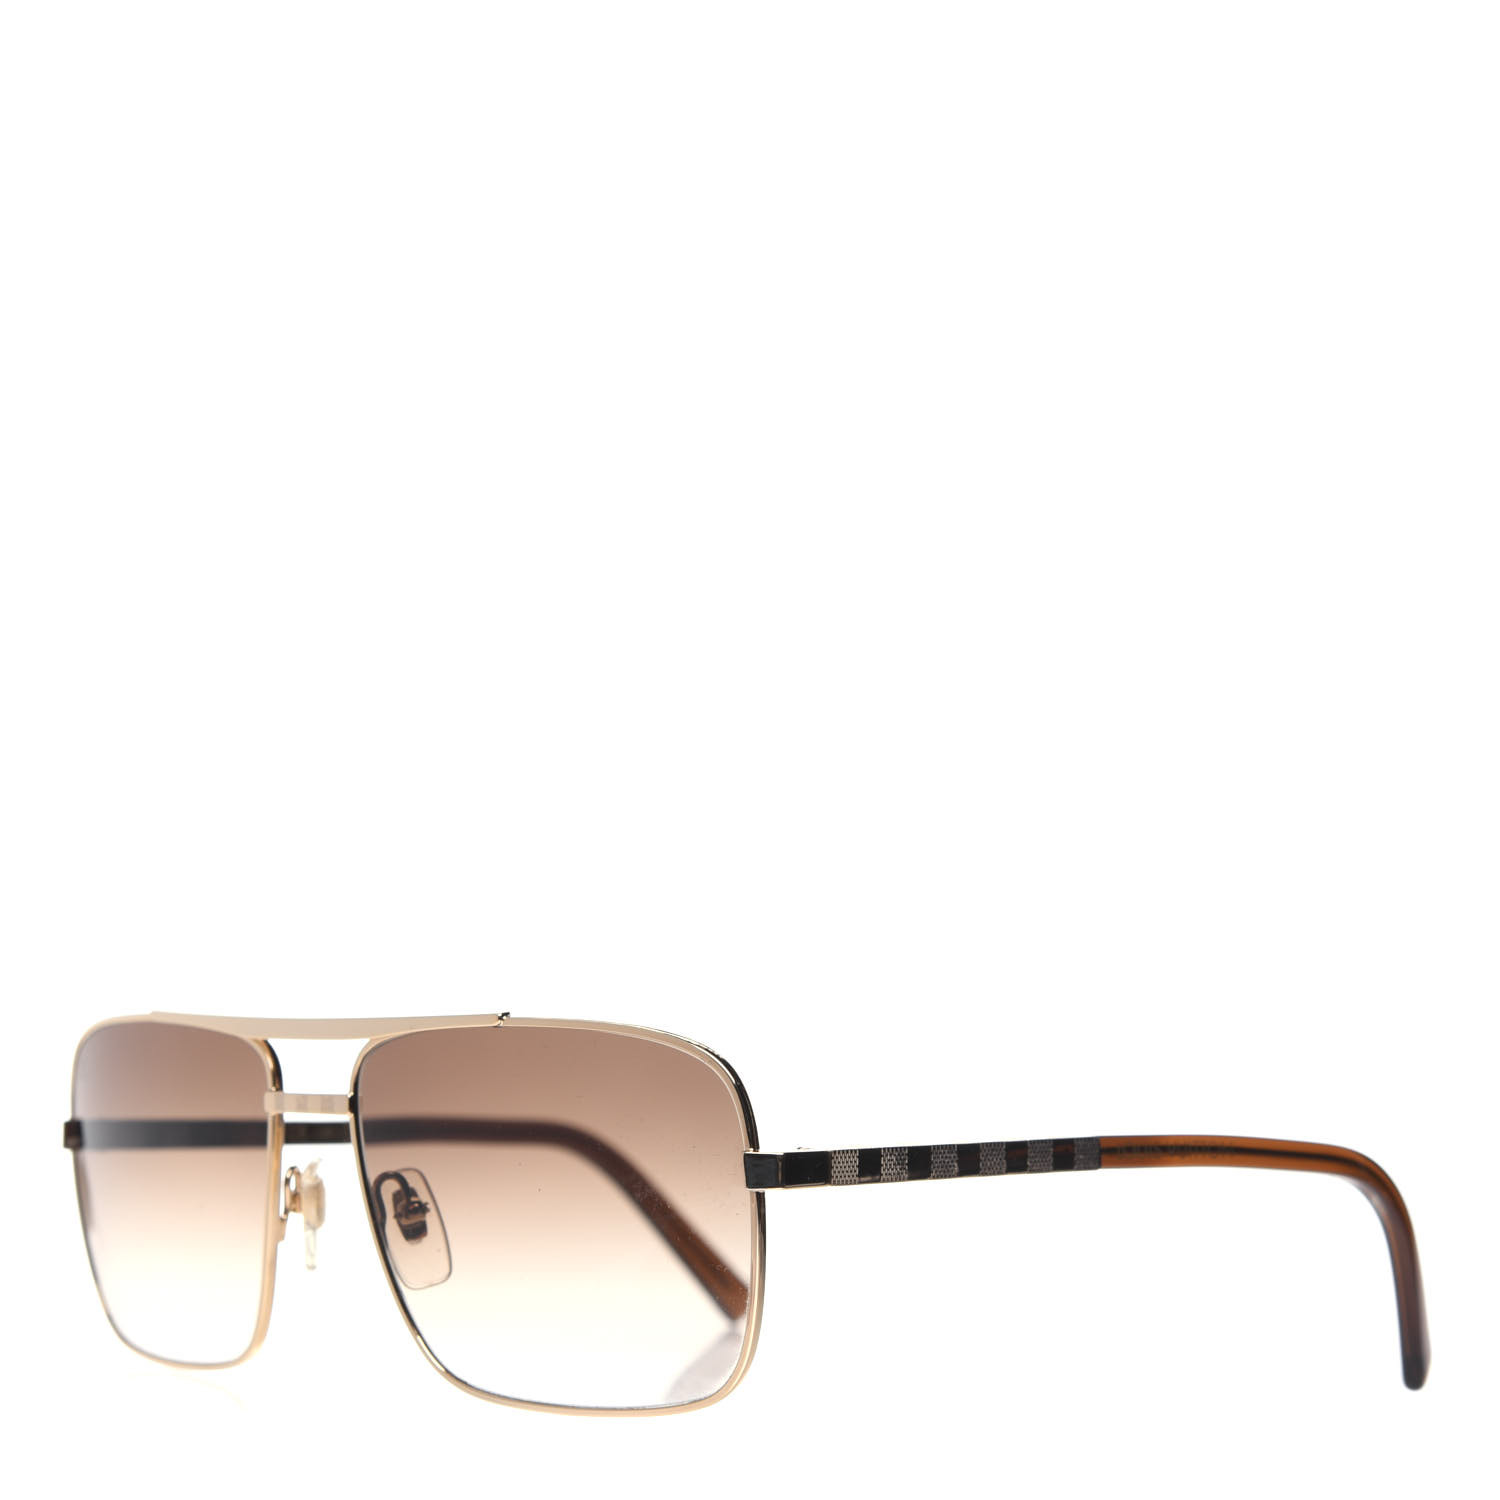 Louis Vuitton Sunglasses Z0259u 948